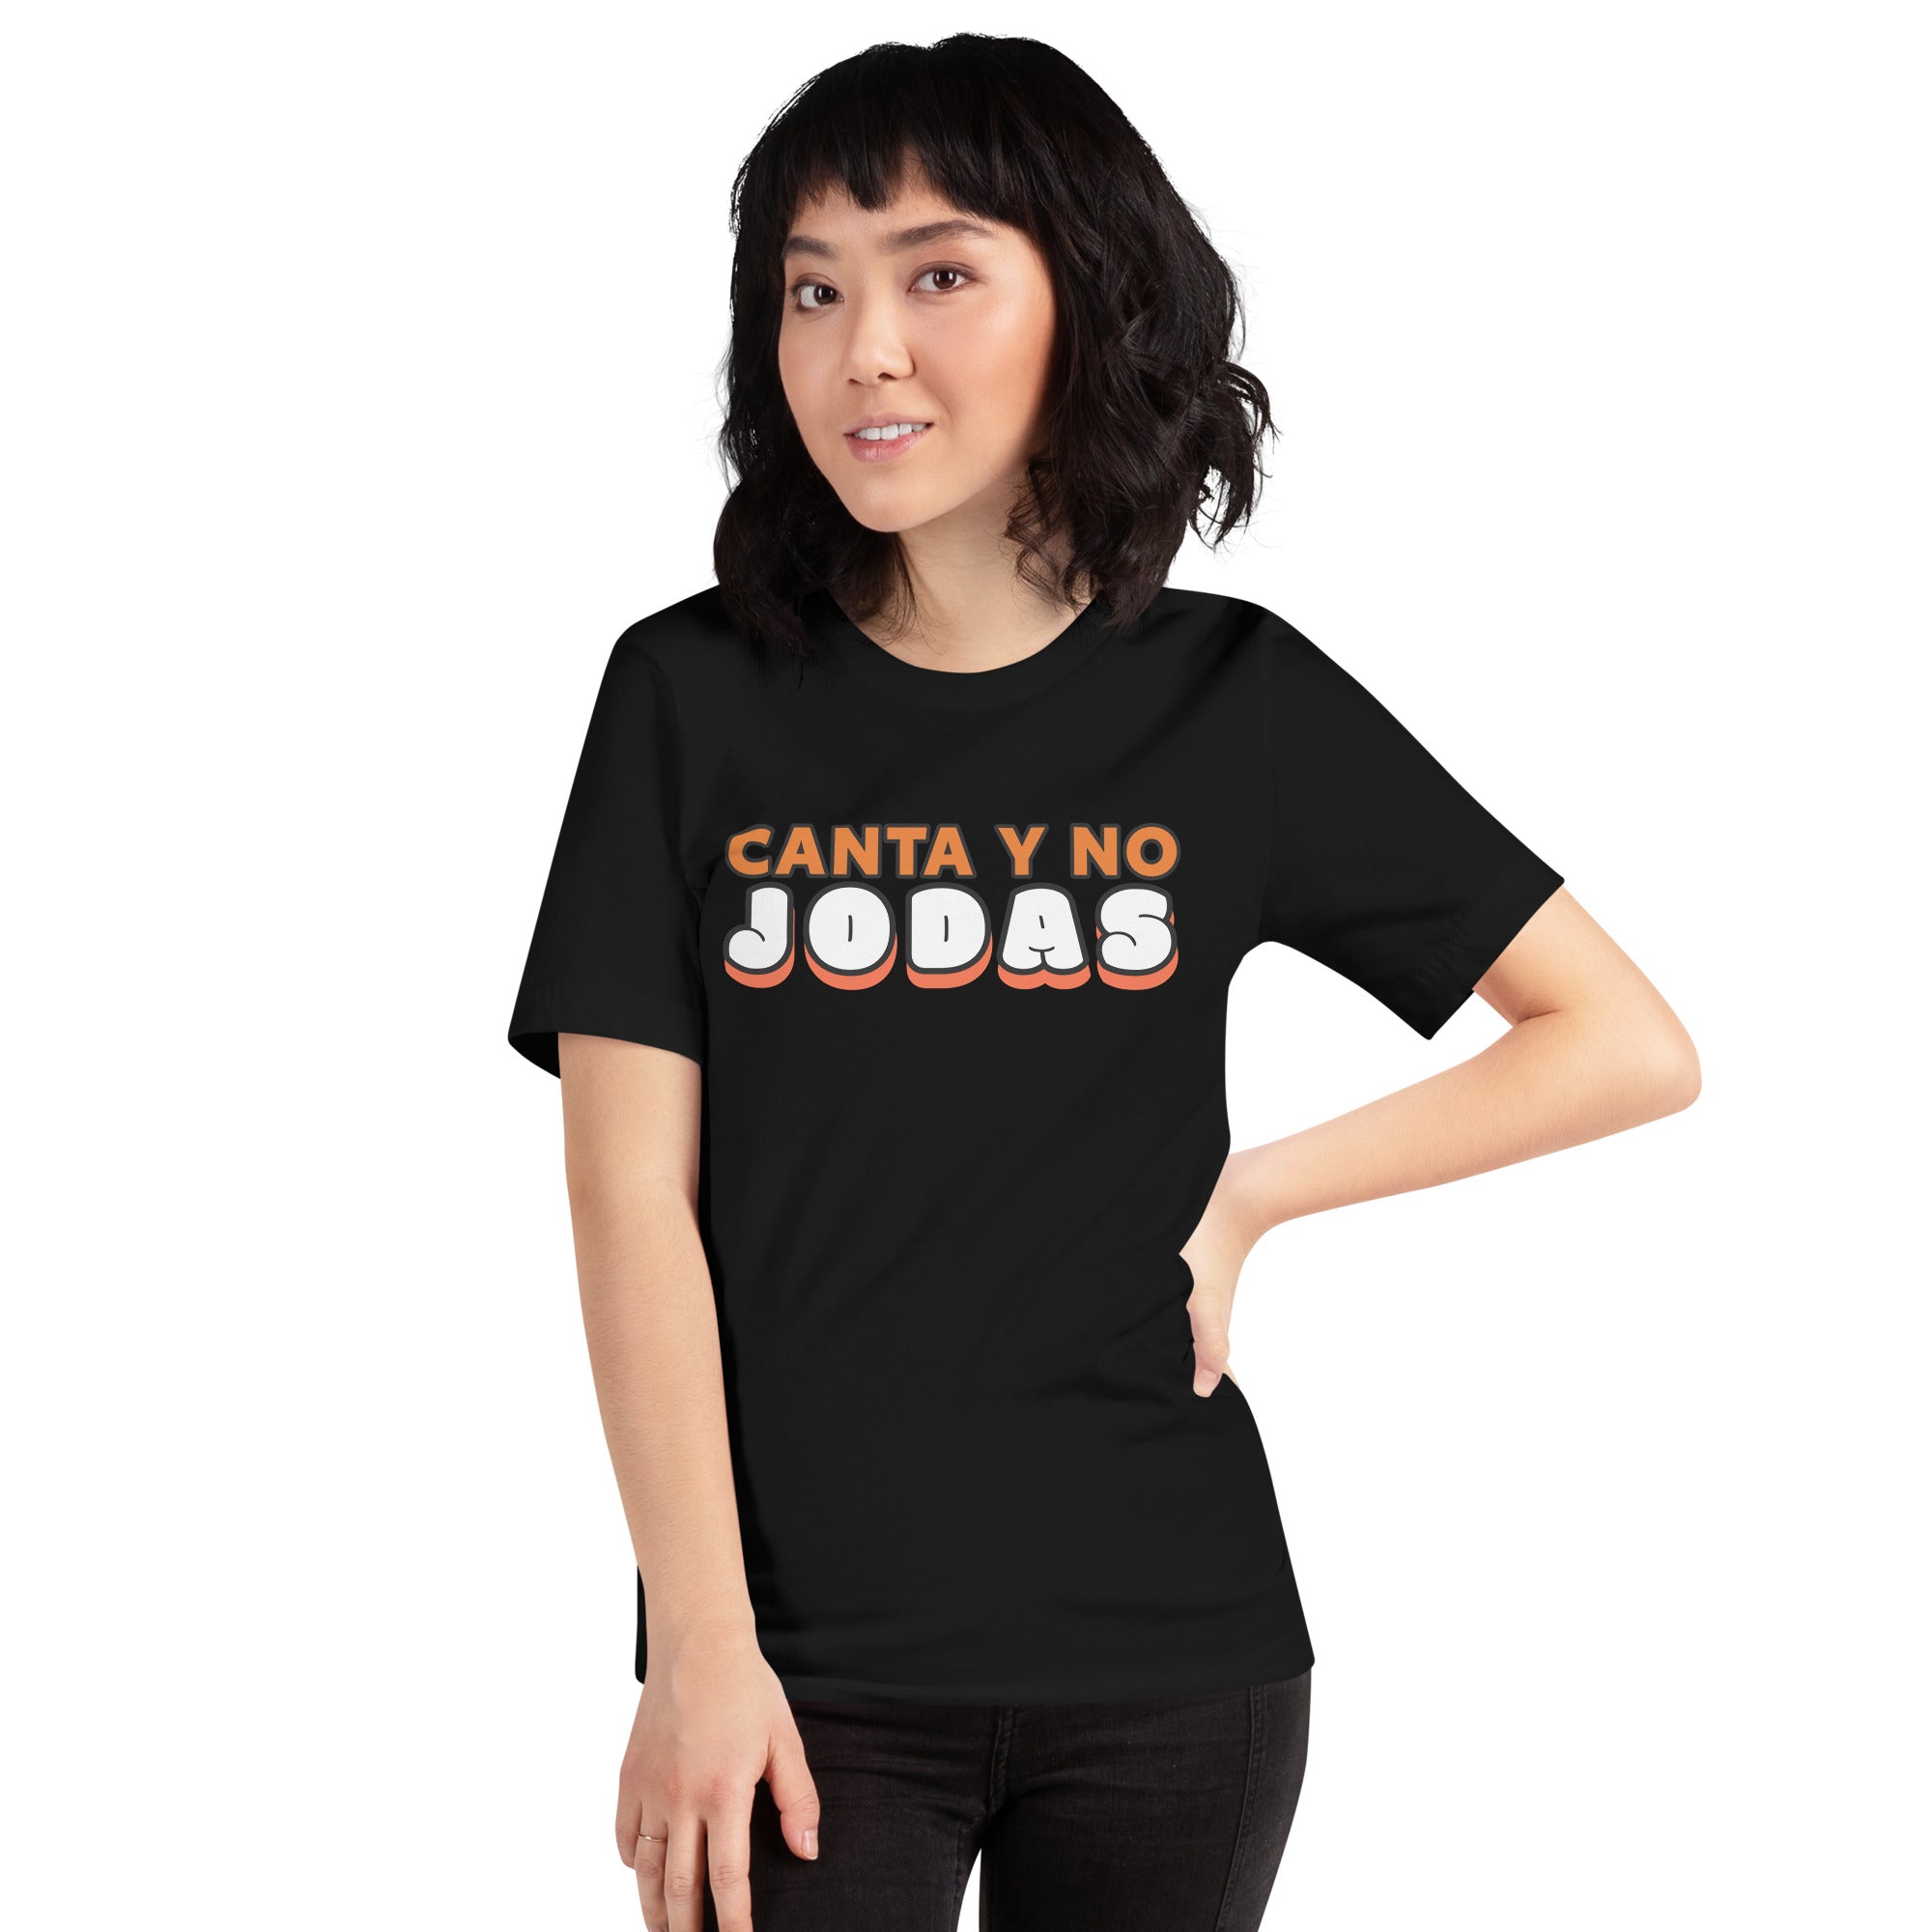 Canta y no jodas | Camiseta de manga corta unisex